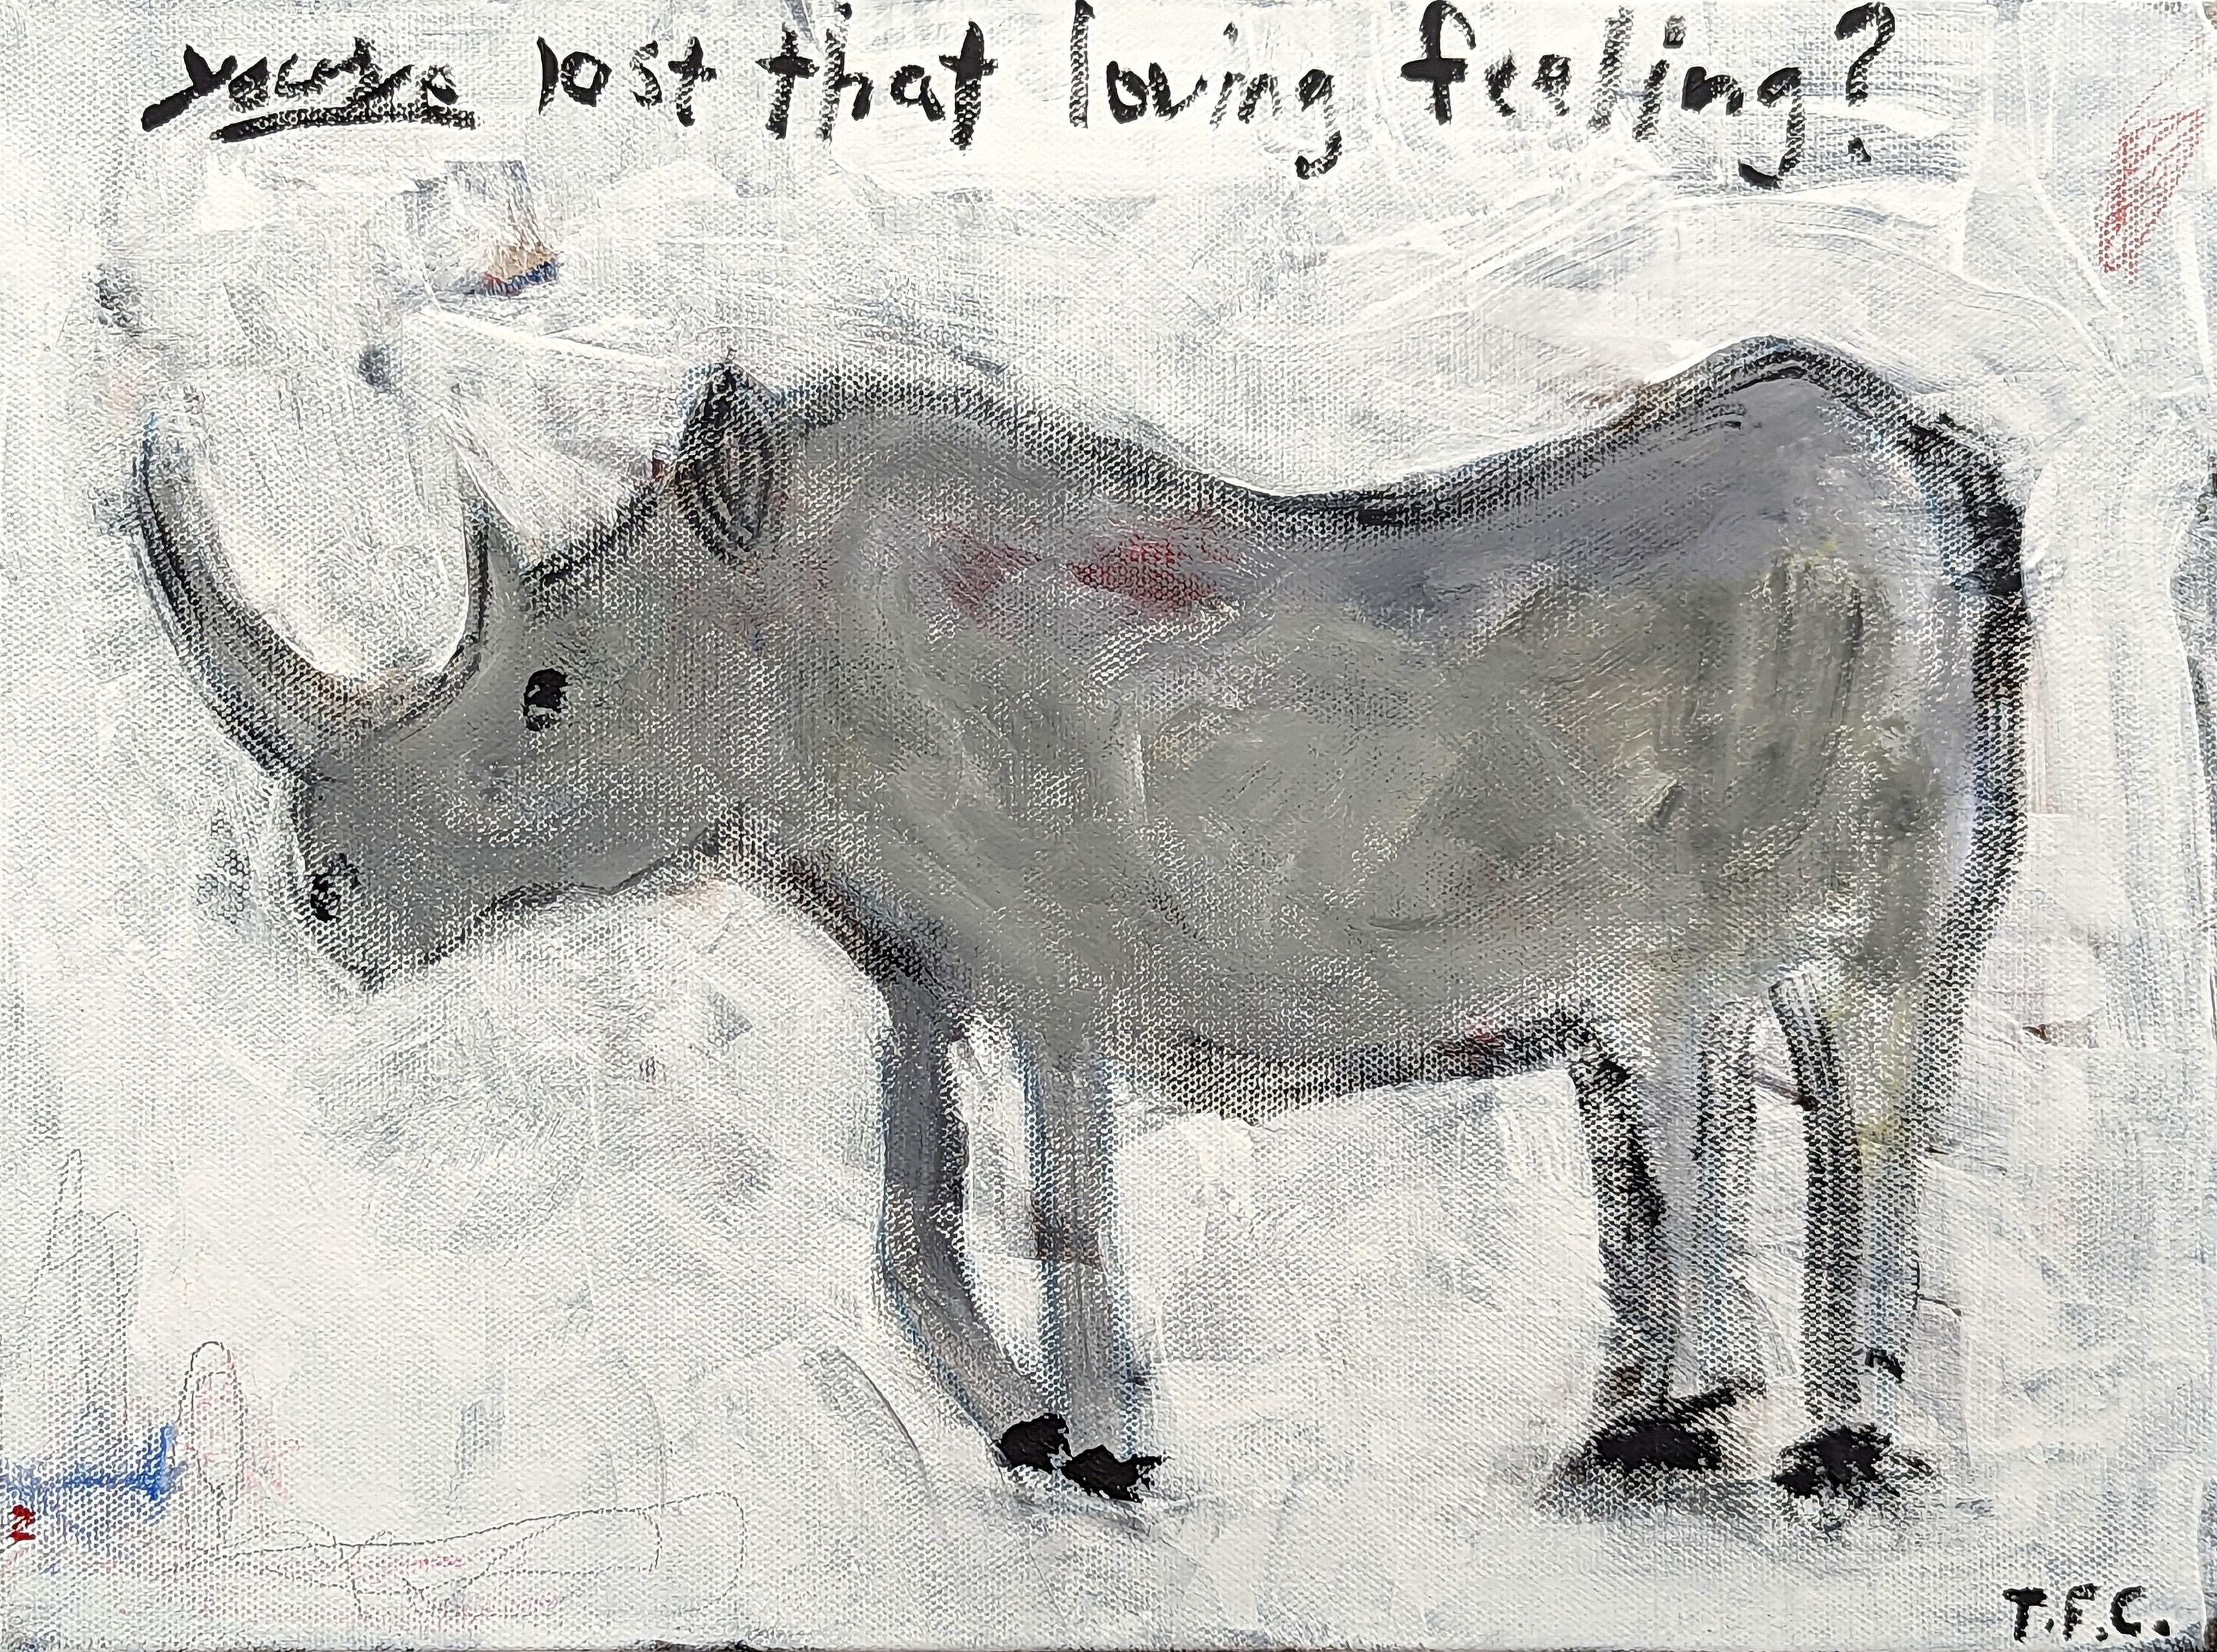 "Rhino" Peinture abstraite contemporaine Pop Art animalier en tons de gris